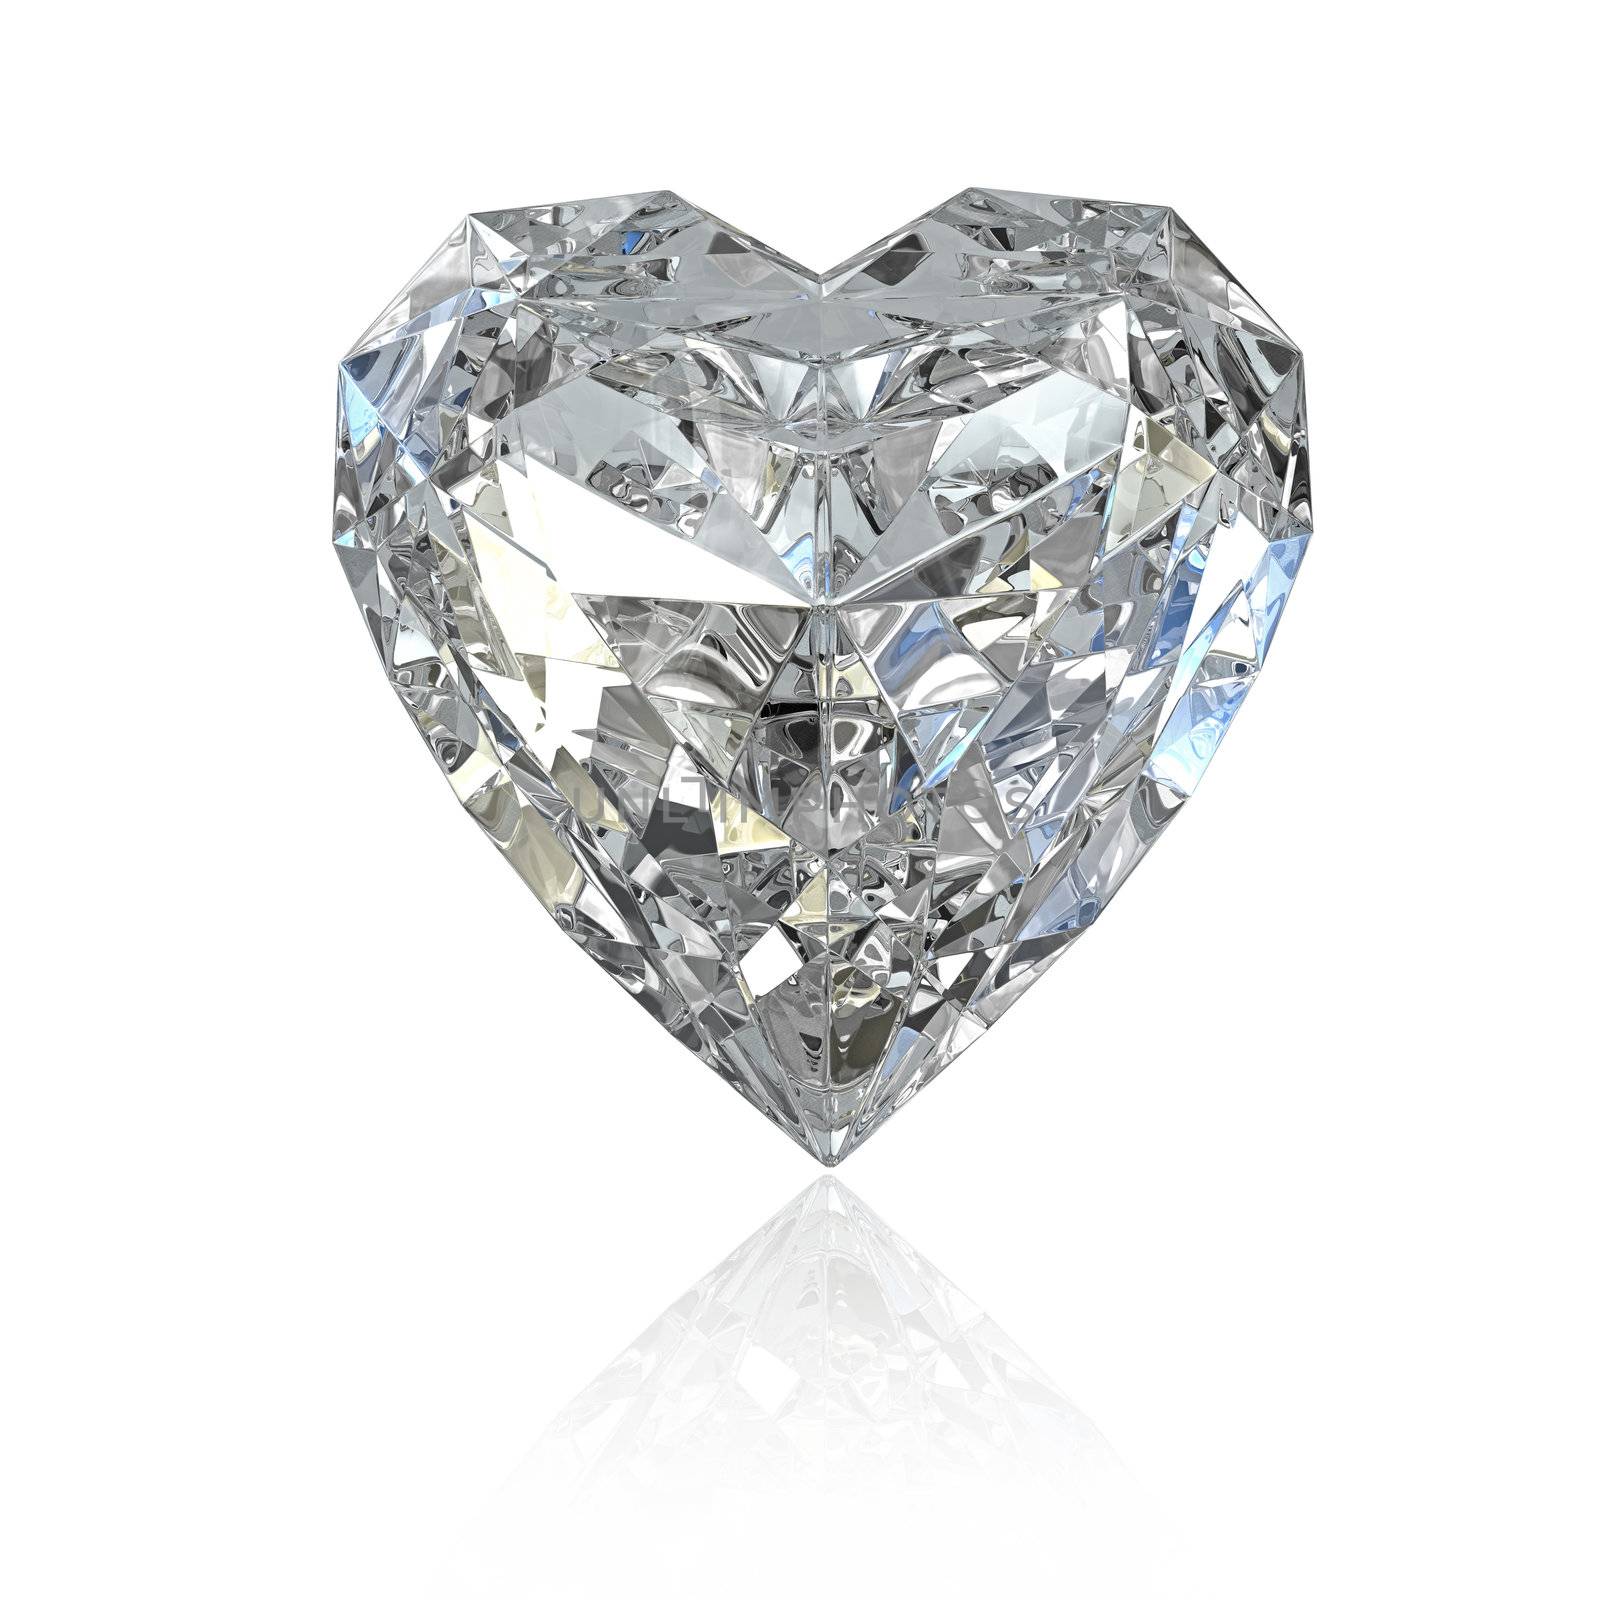 Heart shaped diamond by Zelfit